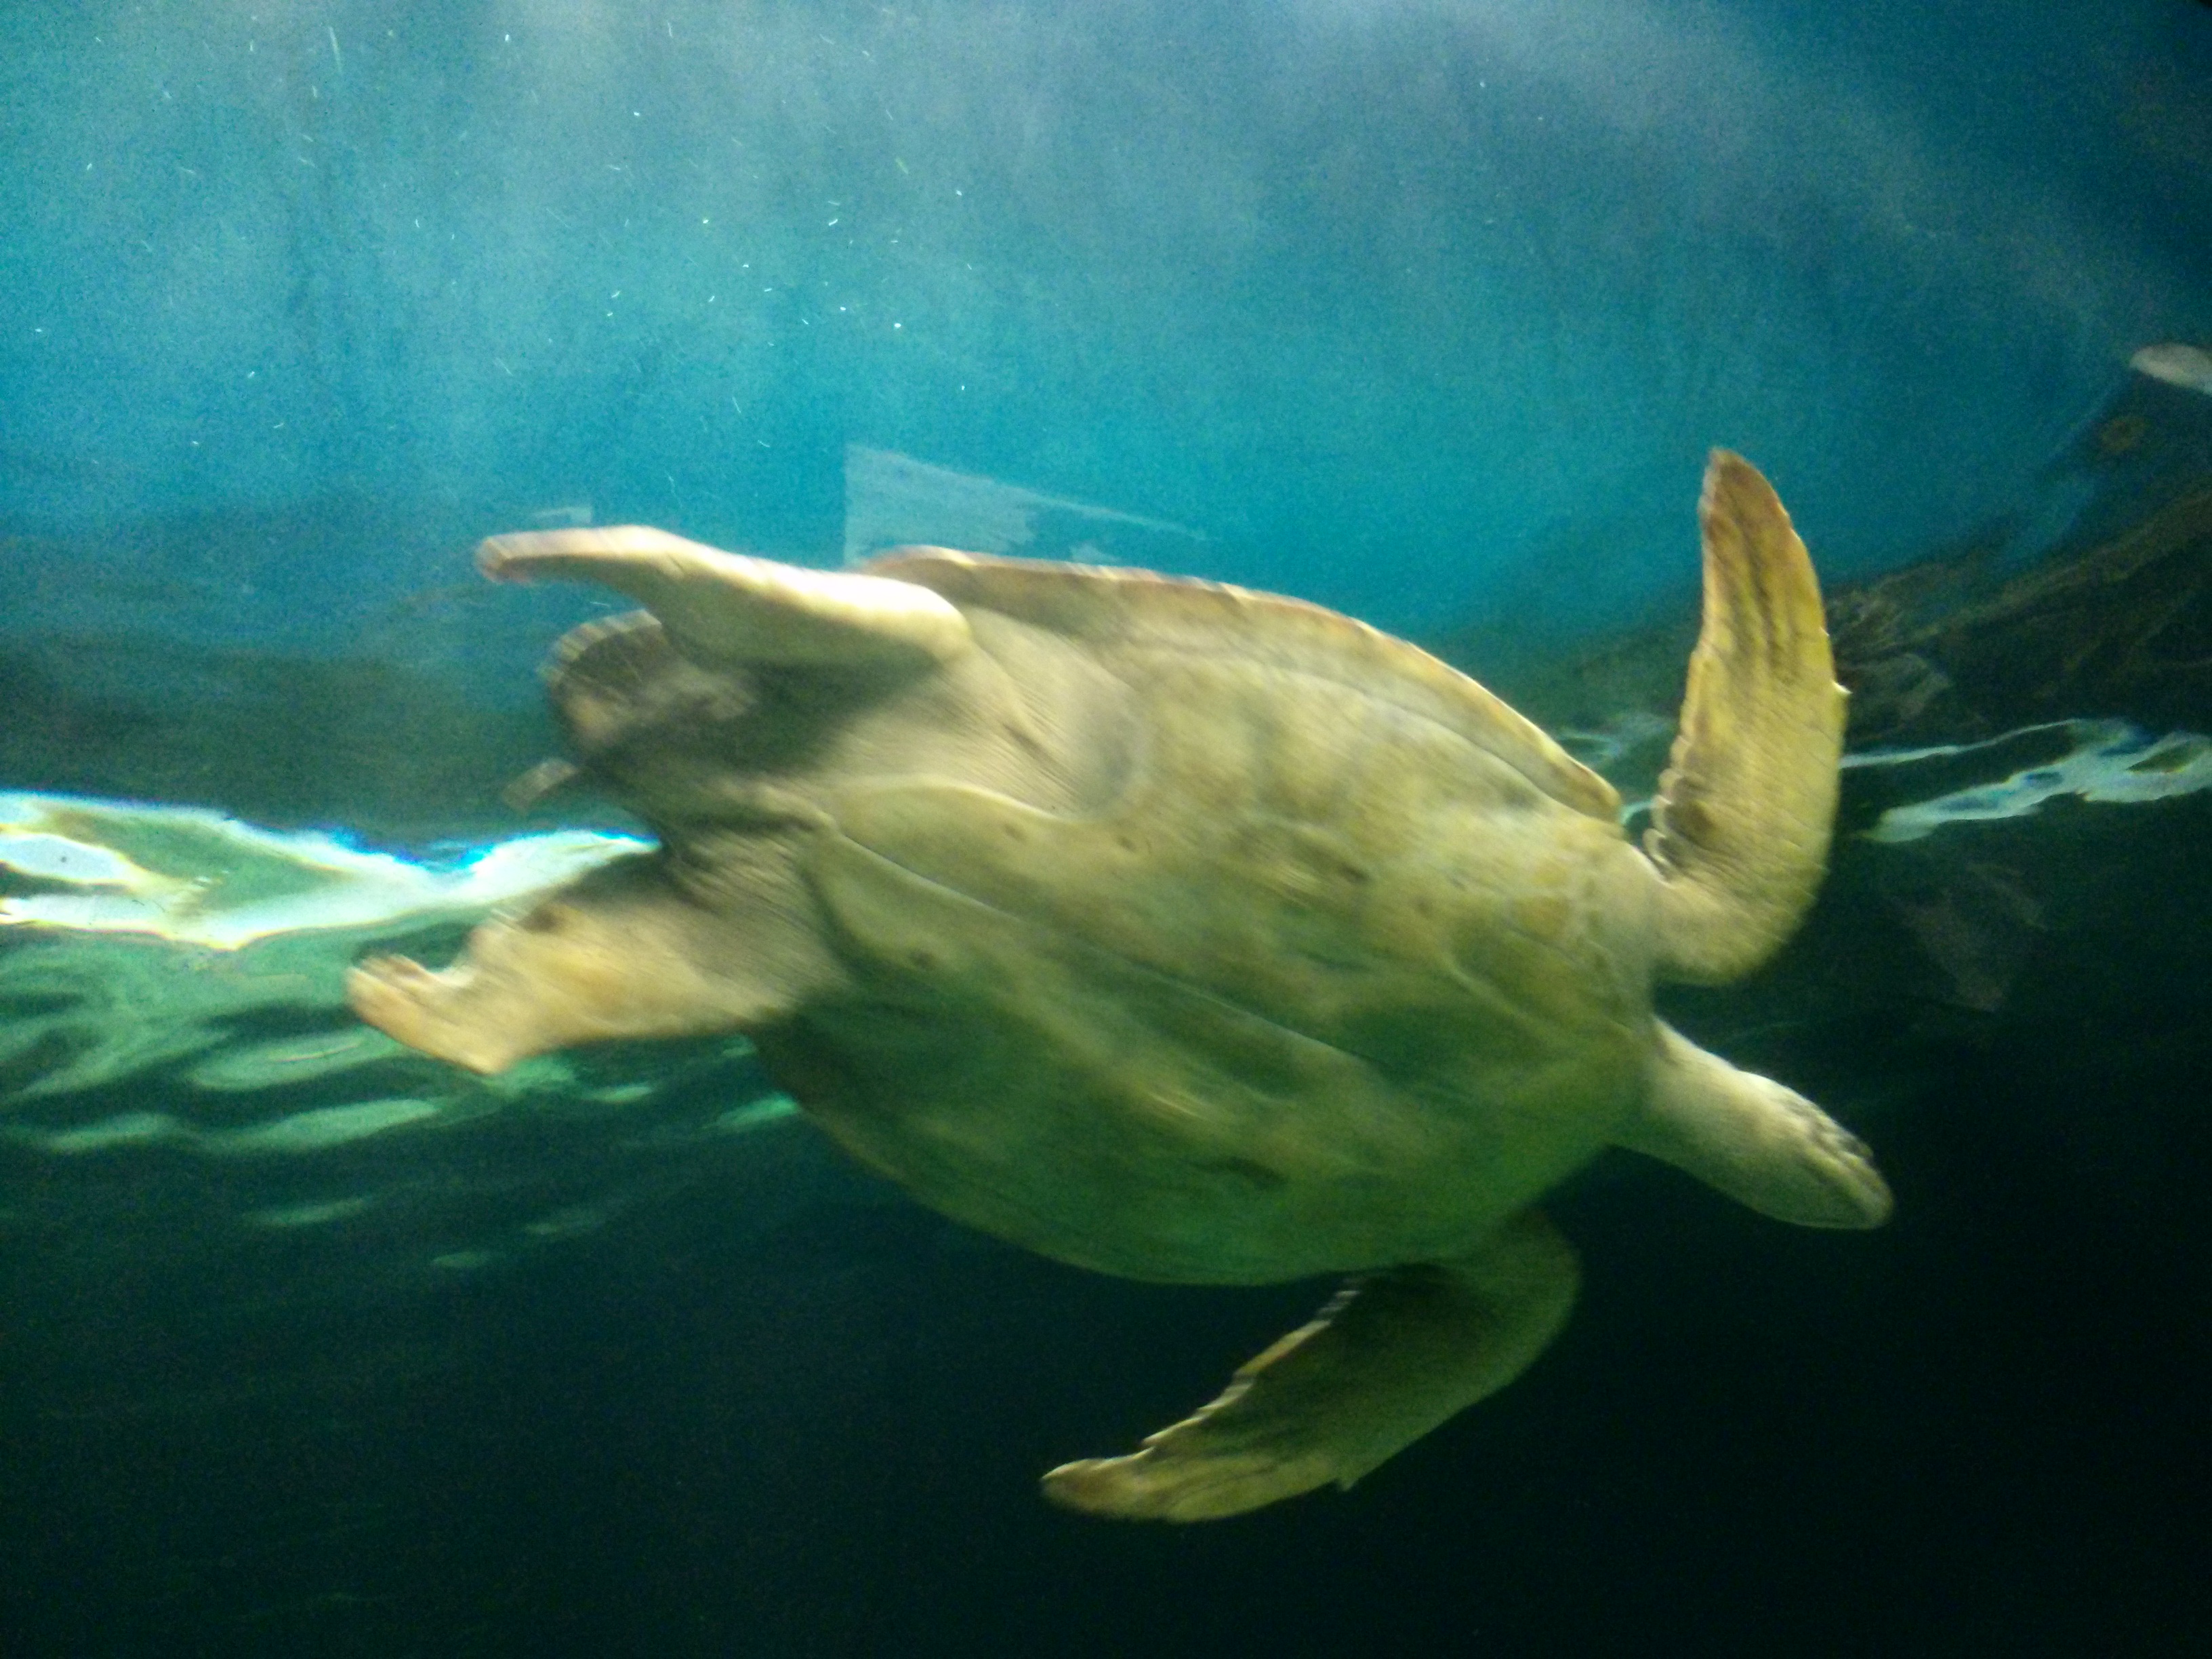 Massive Turtle